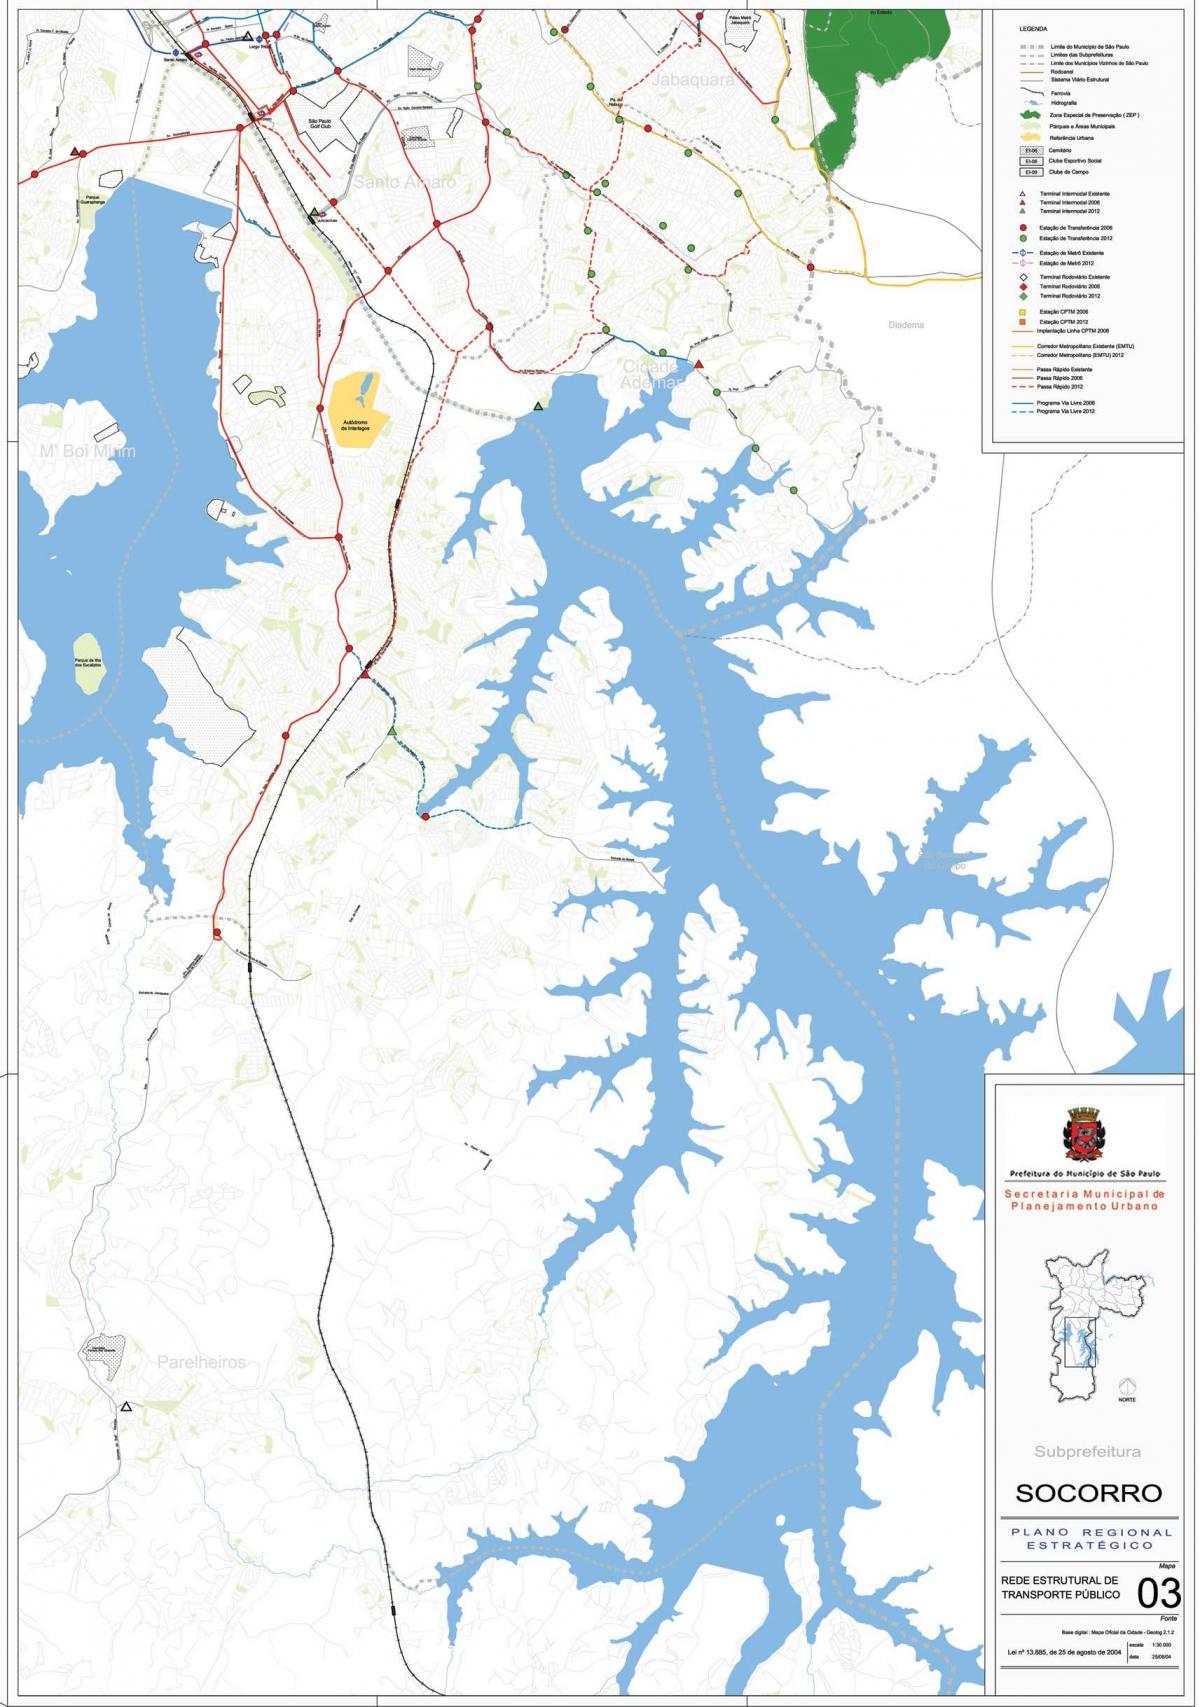 નકશો Capela શું Socorro સાઓ પાઉલો - જાહેર પરિવહન